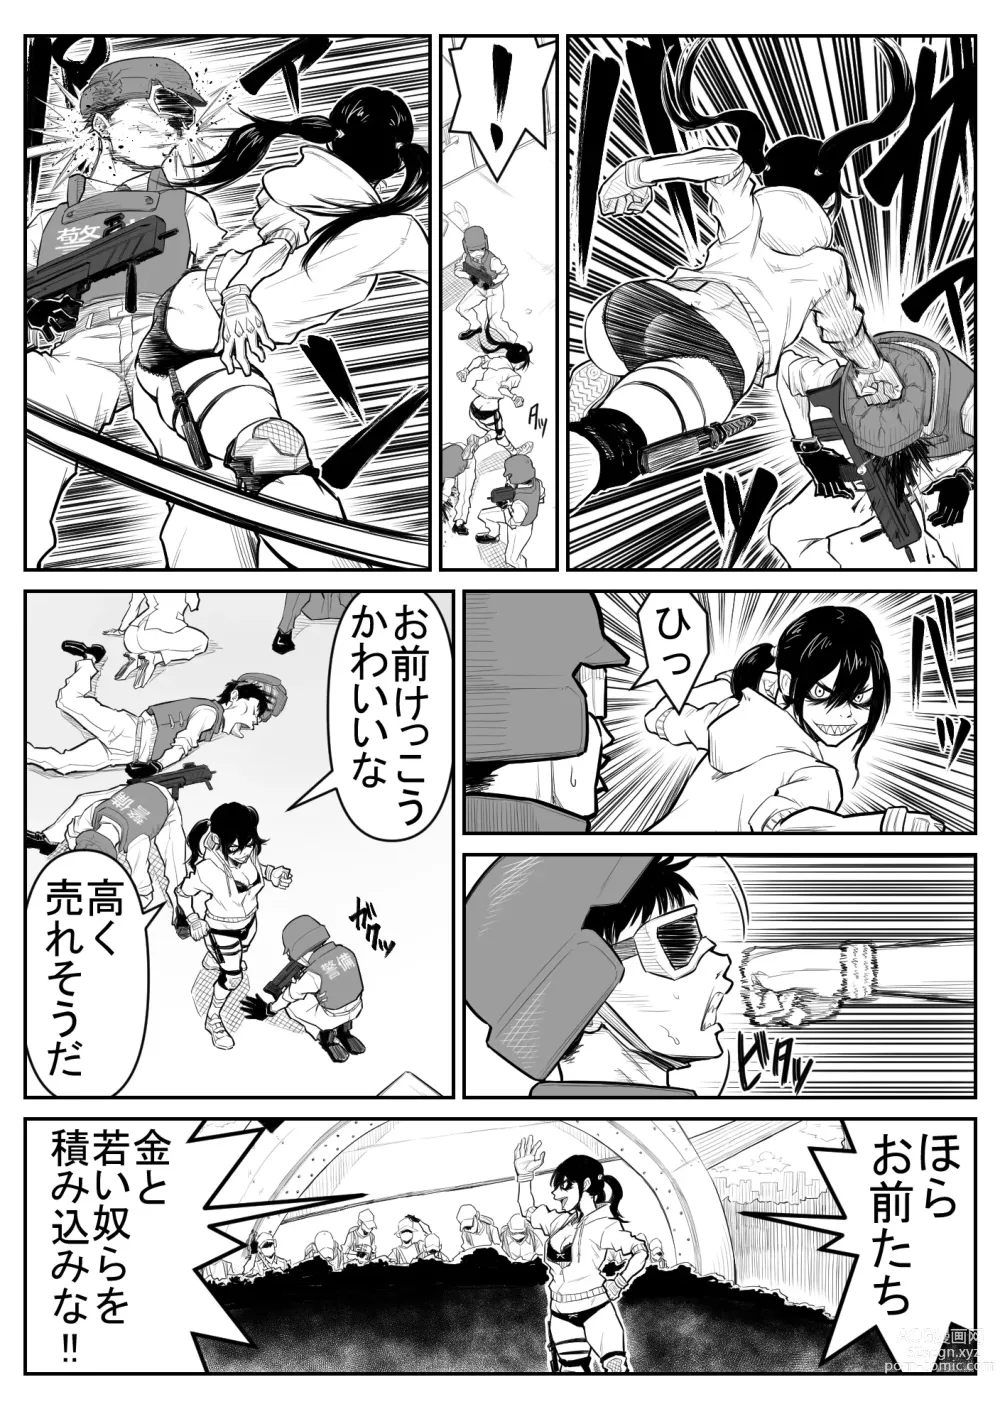 Page 8 of doujinshi Teki o ya rou yo! Chinkoman